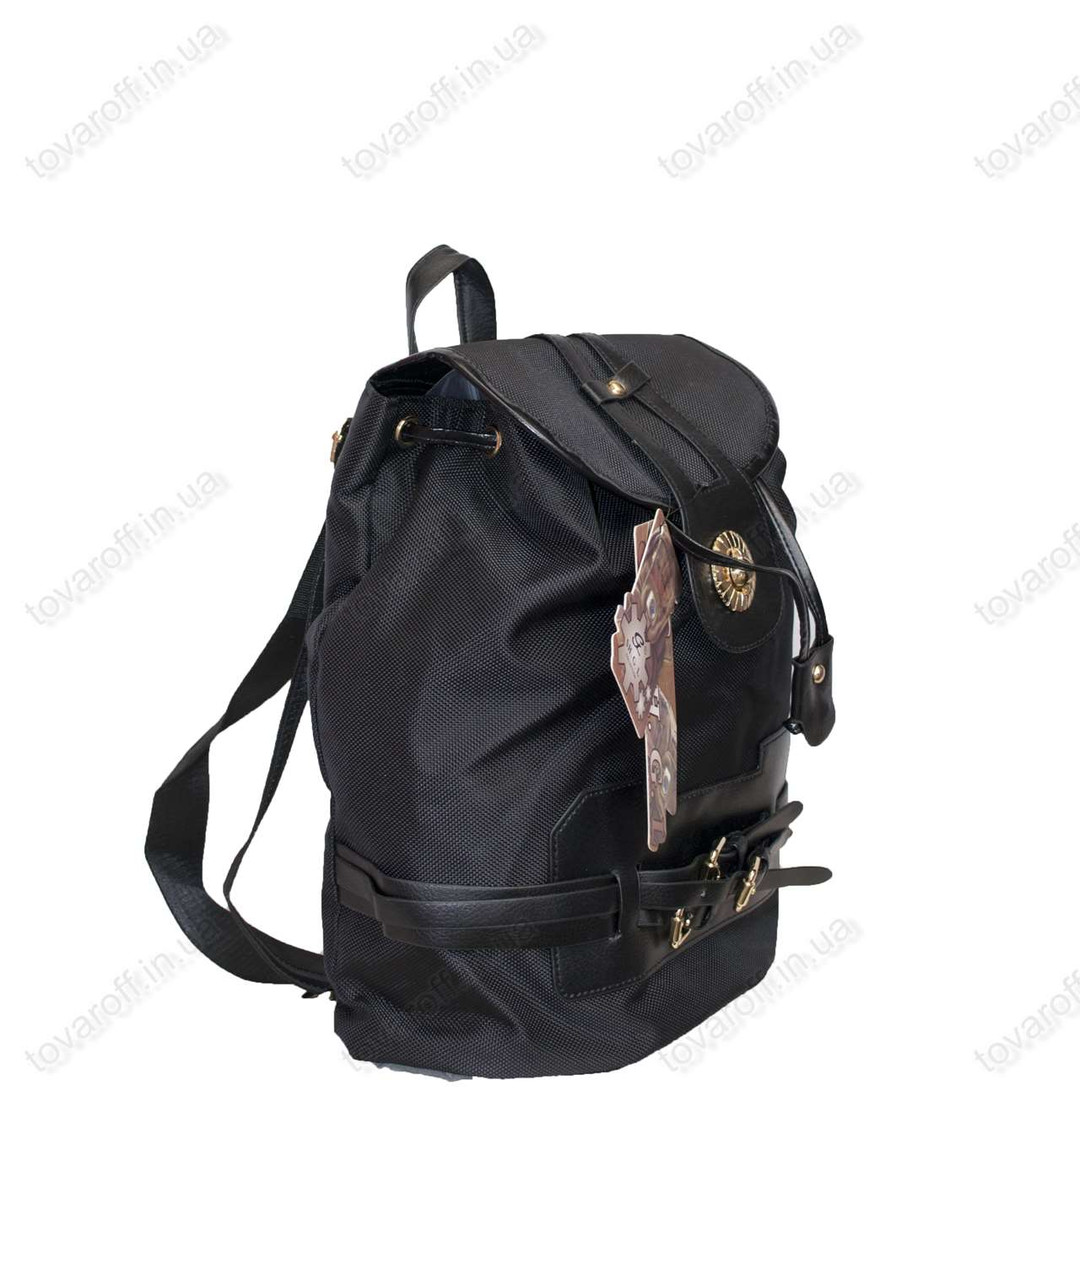 Рюкзак для девочки - Черный - 2014